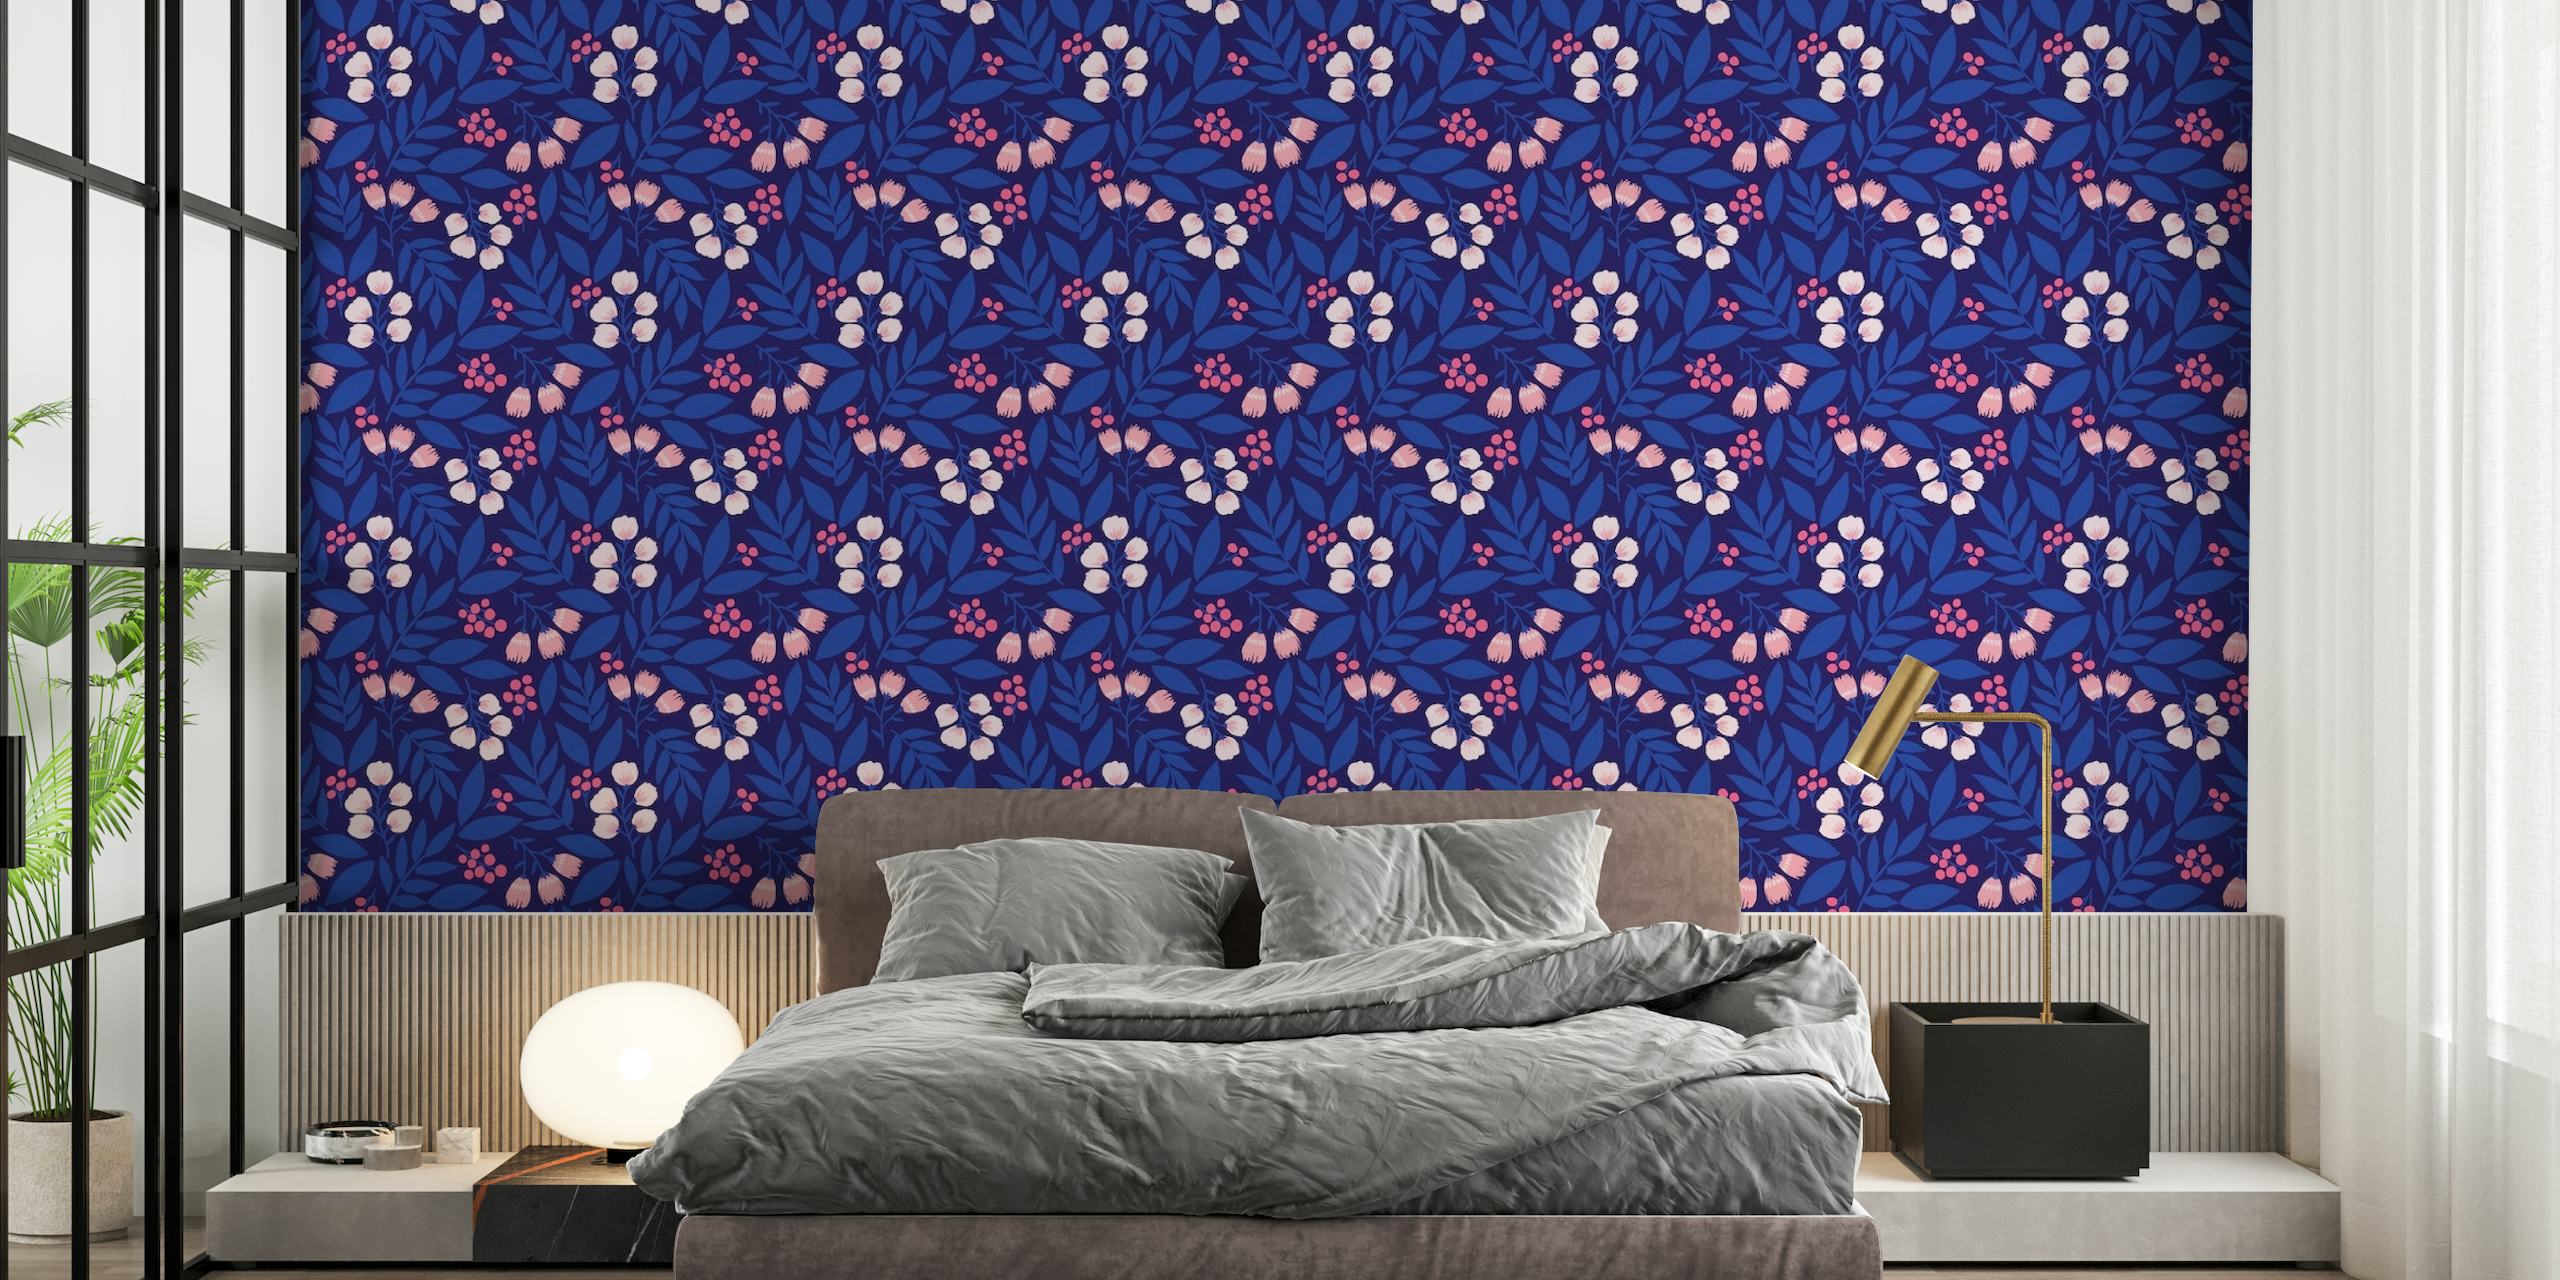 Zidna slika s uzorkom cvjetne siluete u indigo boji pod nazivom "Ponoćni vrt"